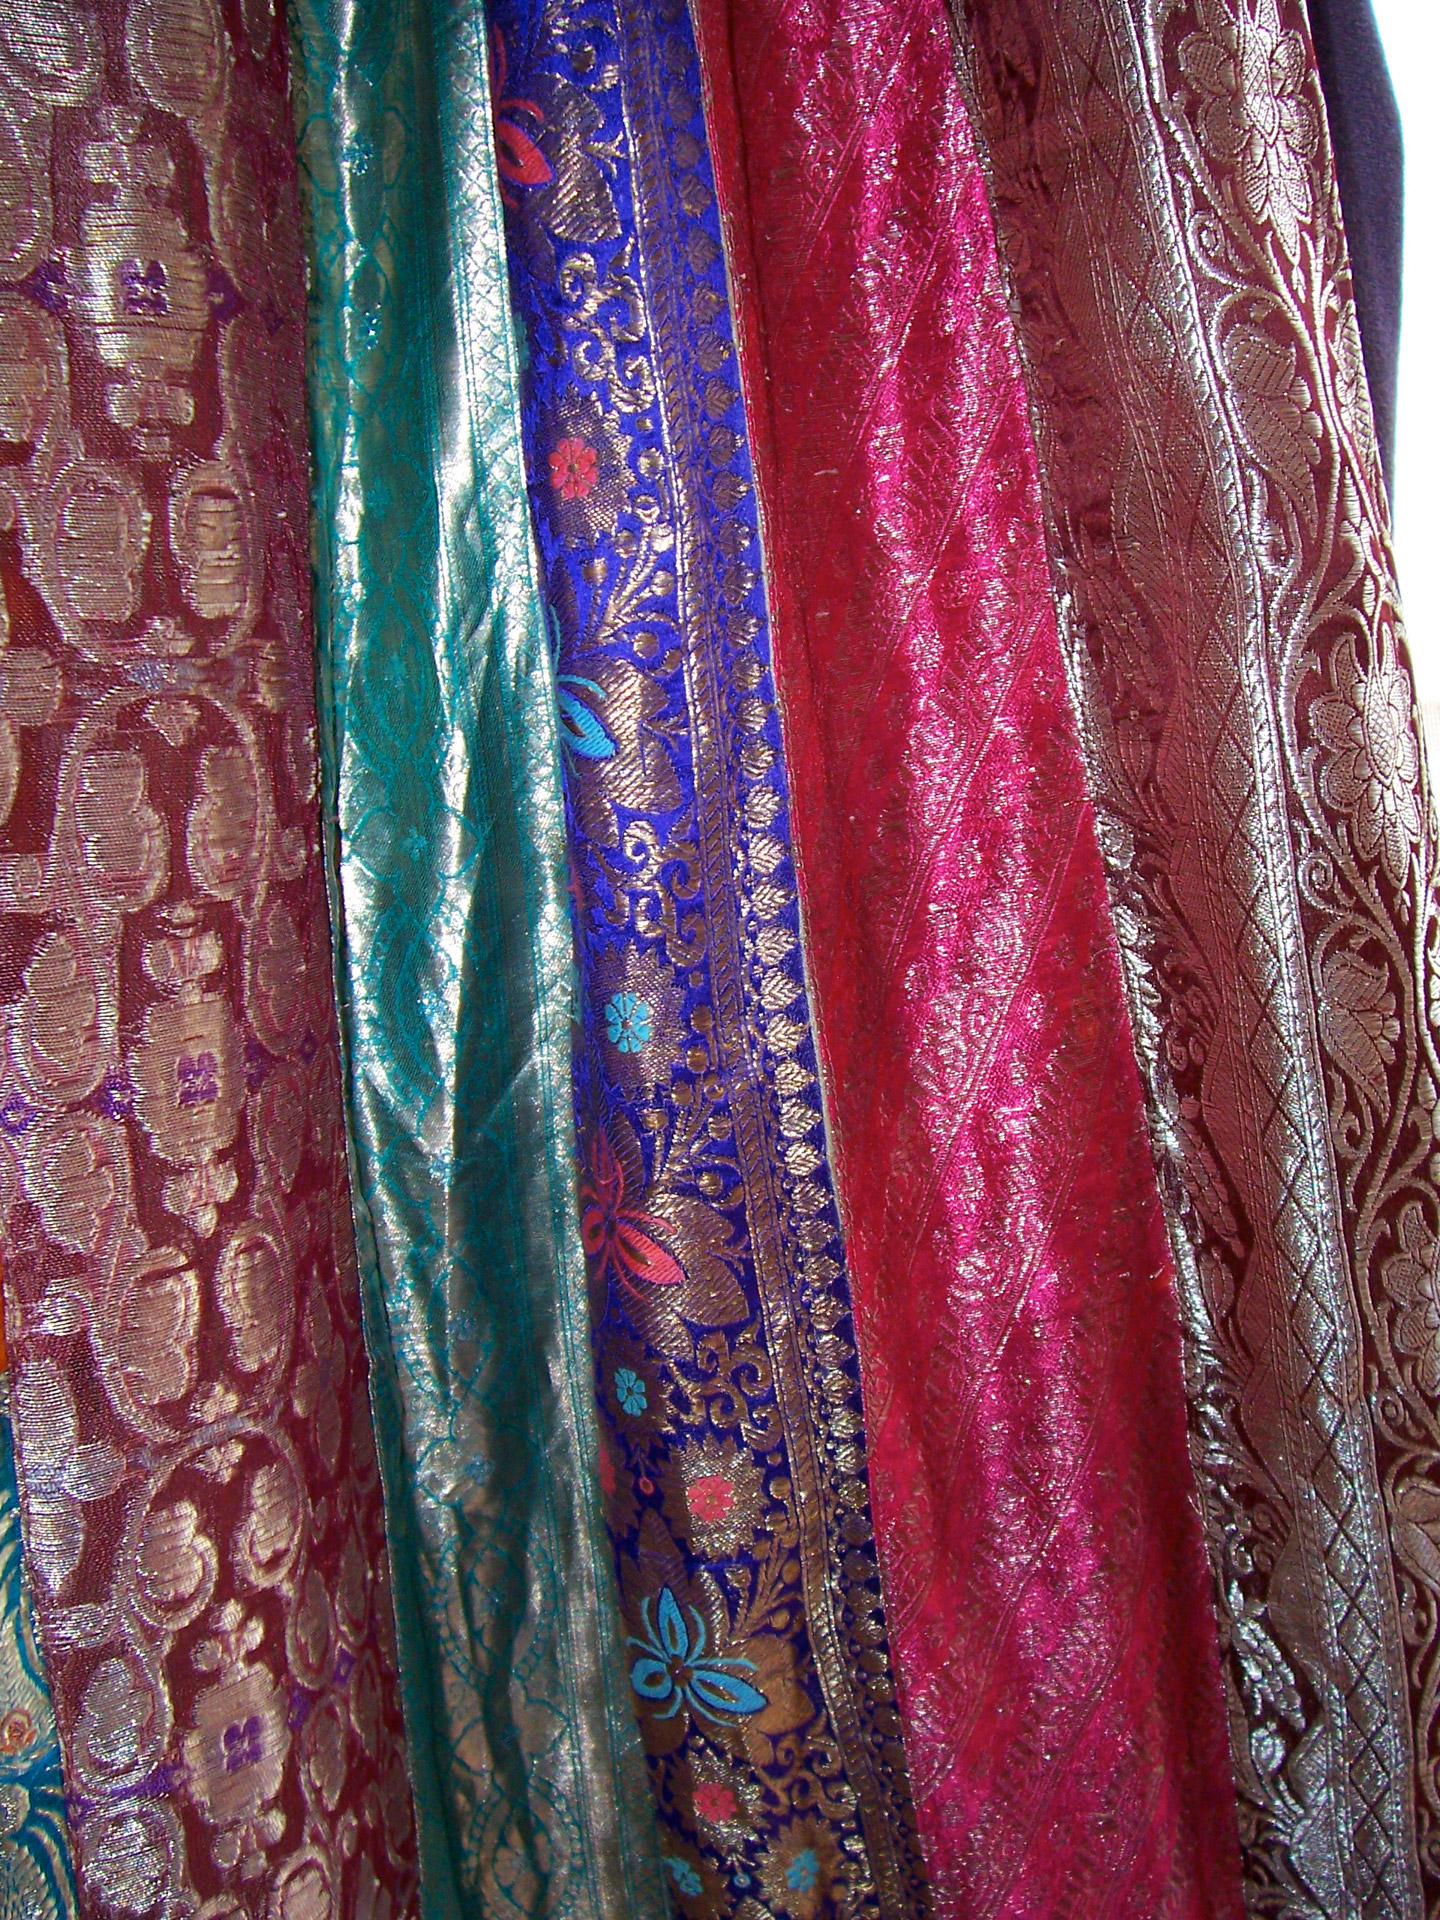 sari-fabric-free-stock-photo-public-domain-pictures